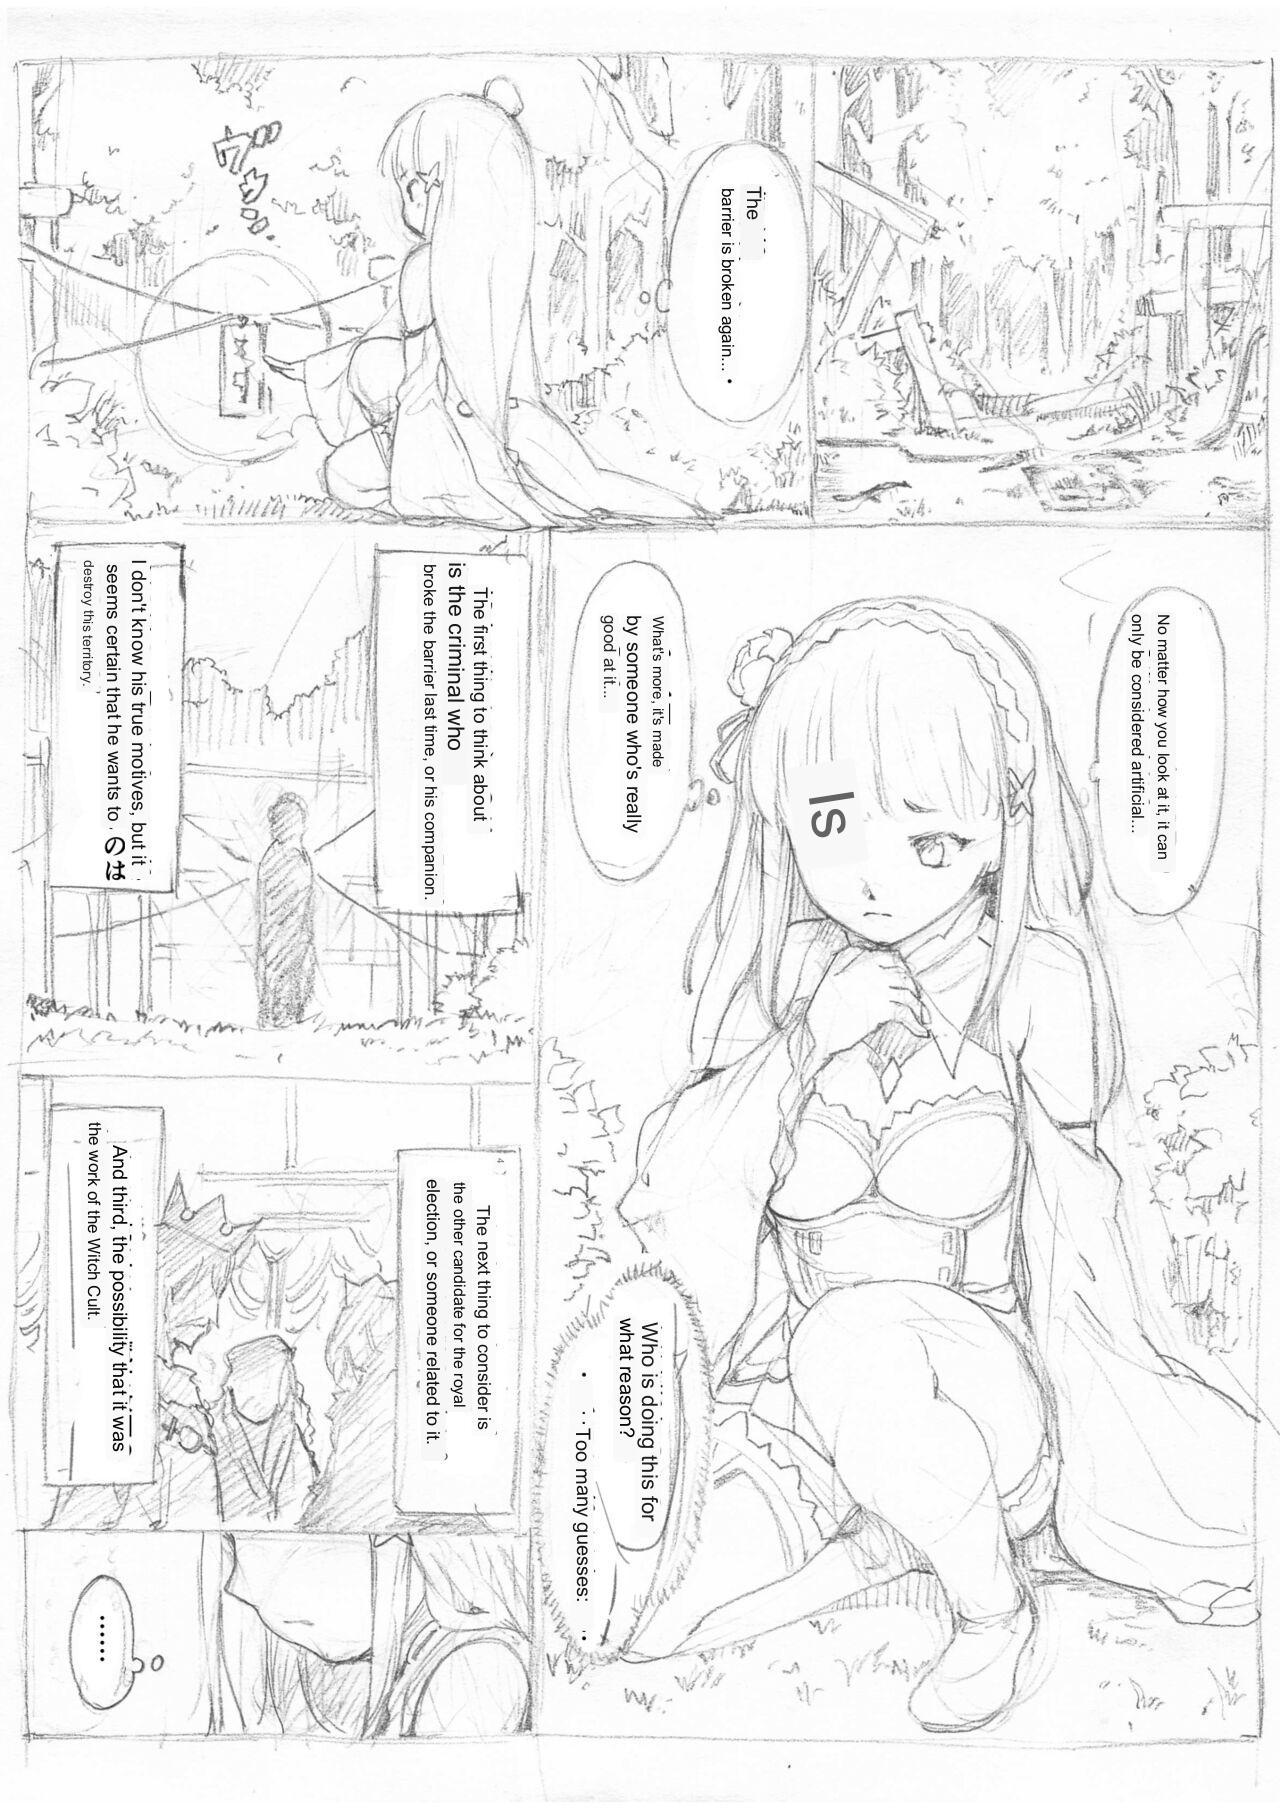 Mexico [Fujiwara Shunichi] Emilia Kumo Ito Kousoku Manga (Re: Zero kara Hajimeru Isekai Seikatsu) google translate - Original Interracial - Picture 1